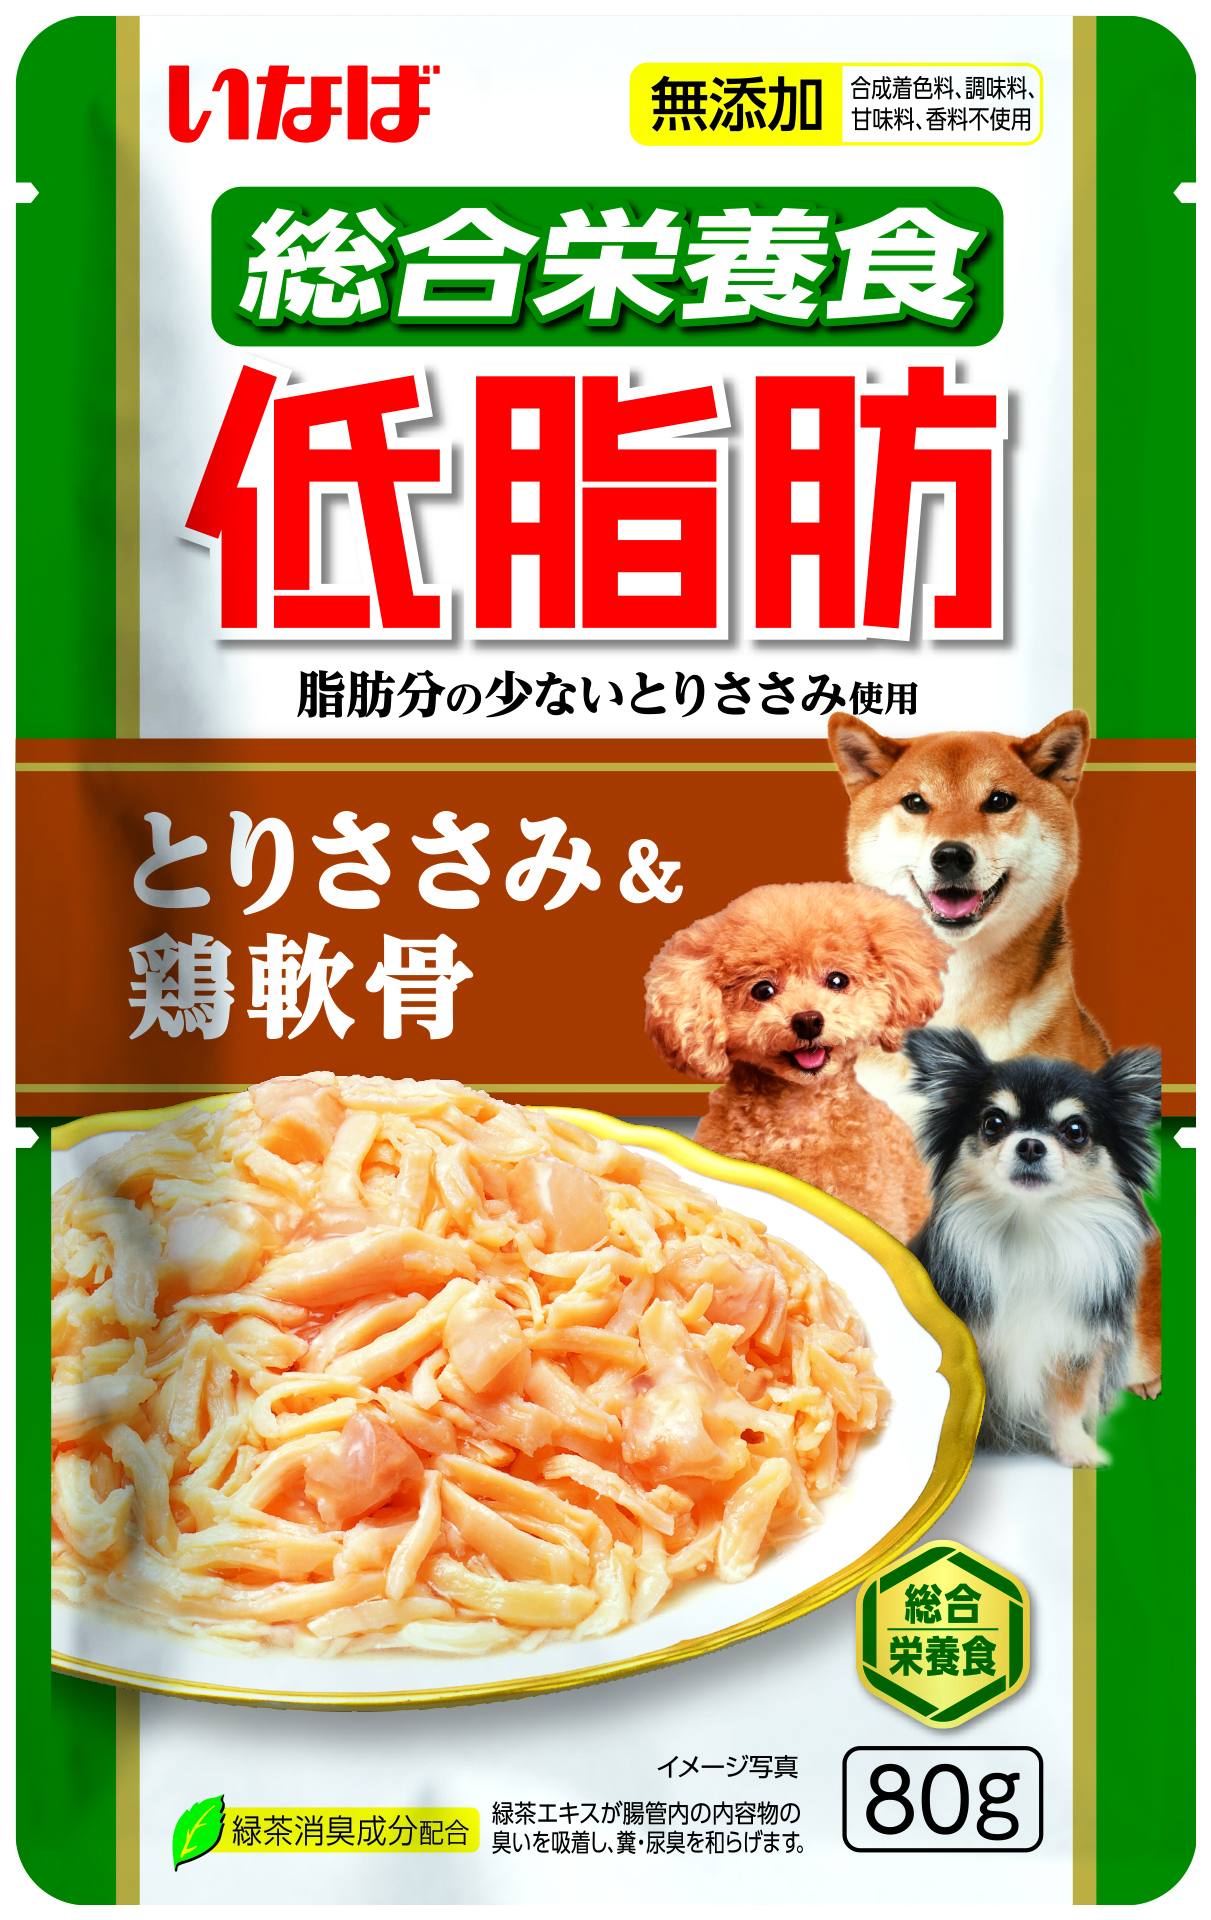 Влажный корм для собак INABA Teishibo, с куриным филе и куриными хрящами, 80 г, 12 шт